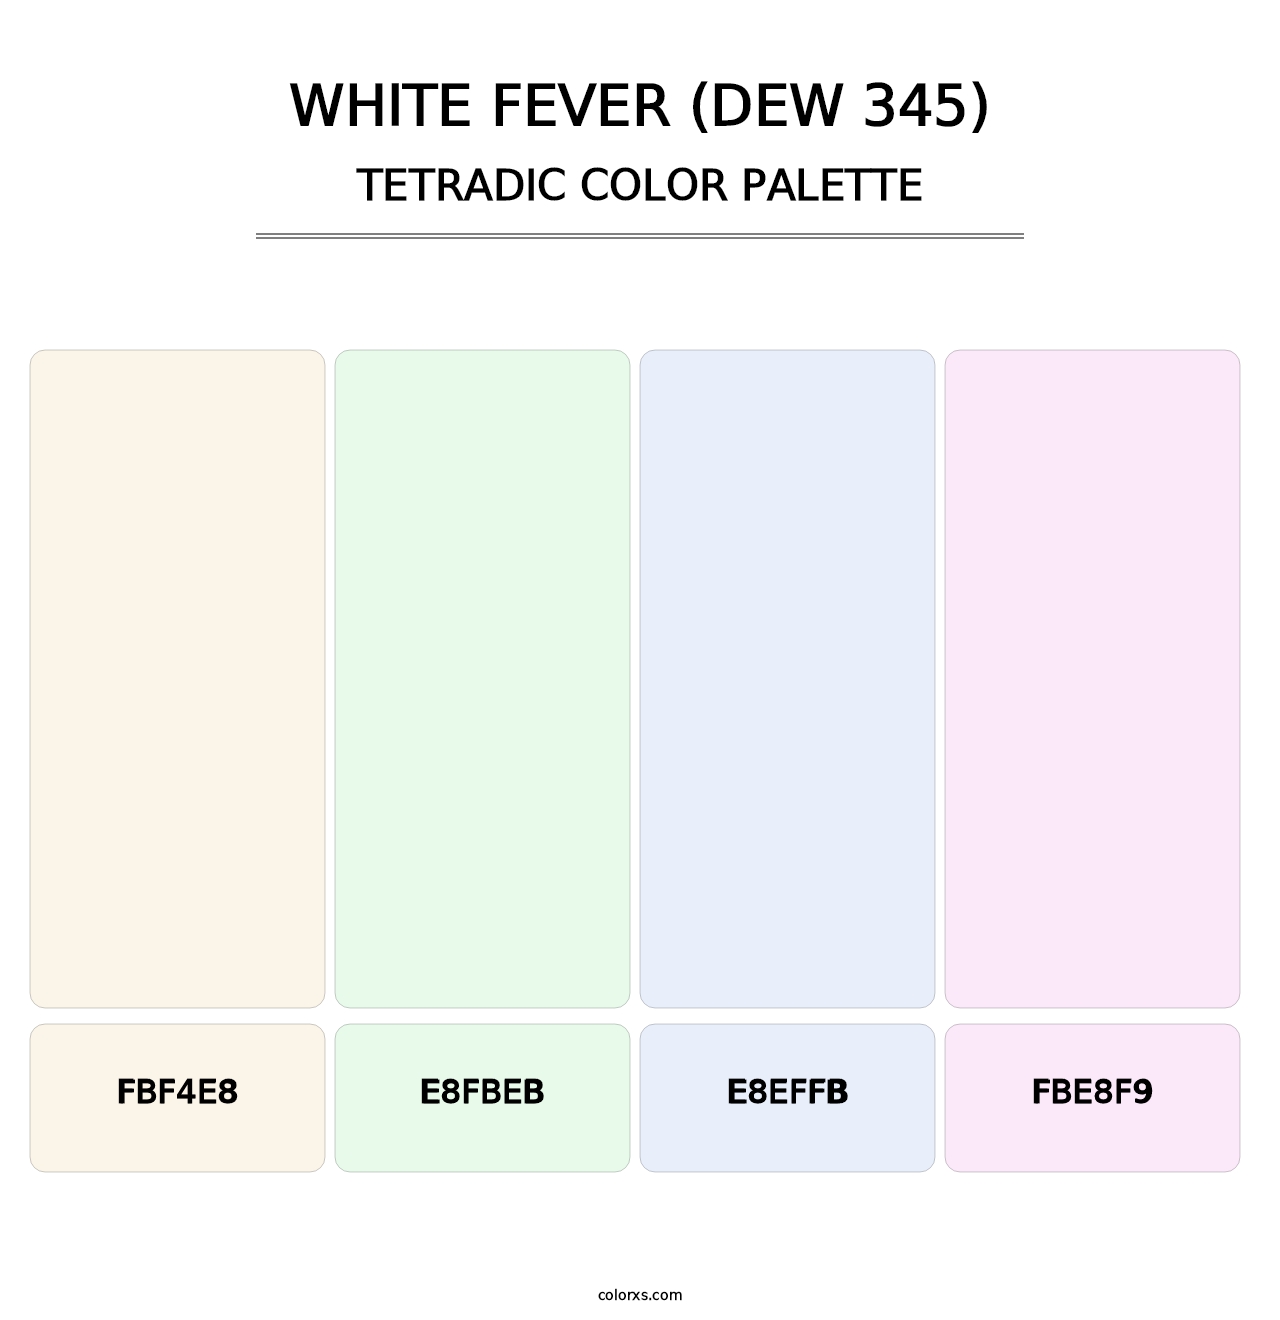 White Fever (DEW 345) - Tetradic Color Palette